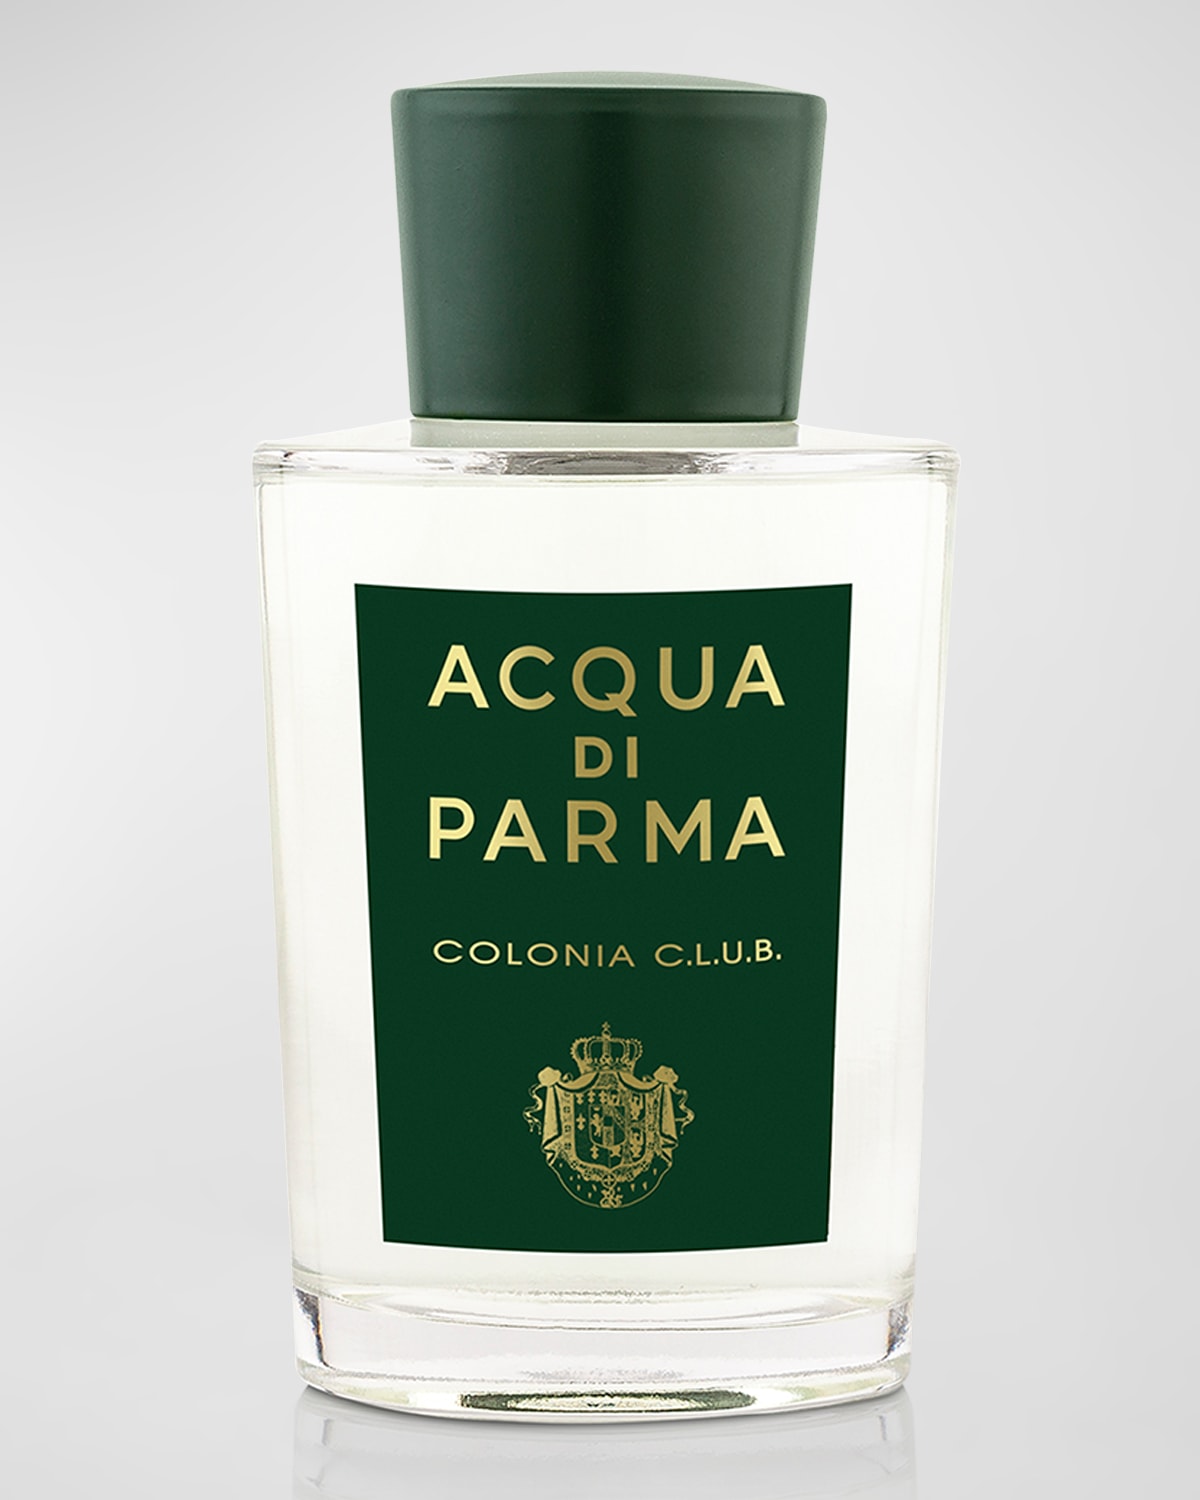 Shop Acqua Di Parma Colonia C. L.u. B. Eau De Cologne, 6.0 Oz.